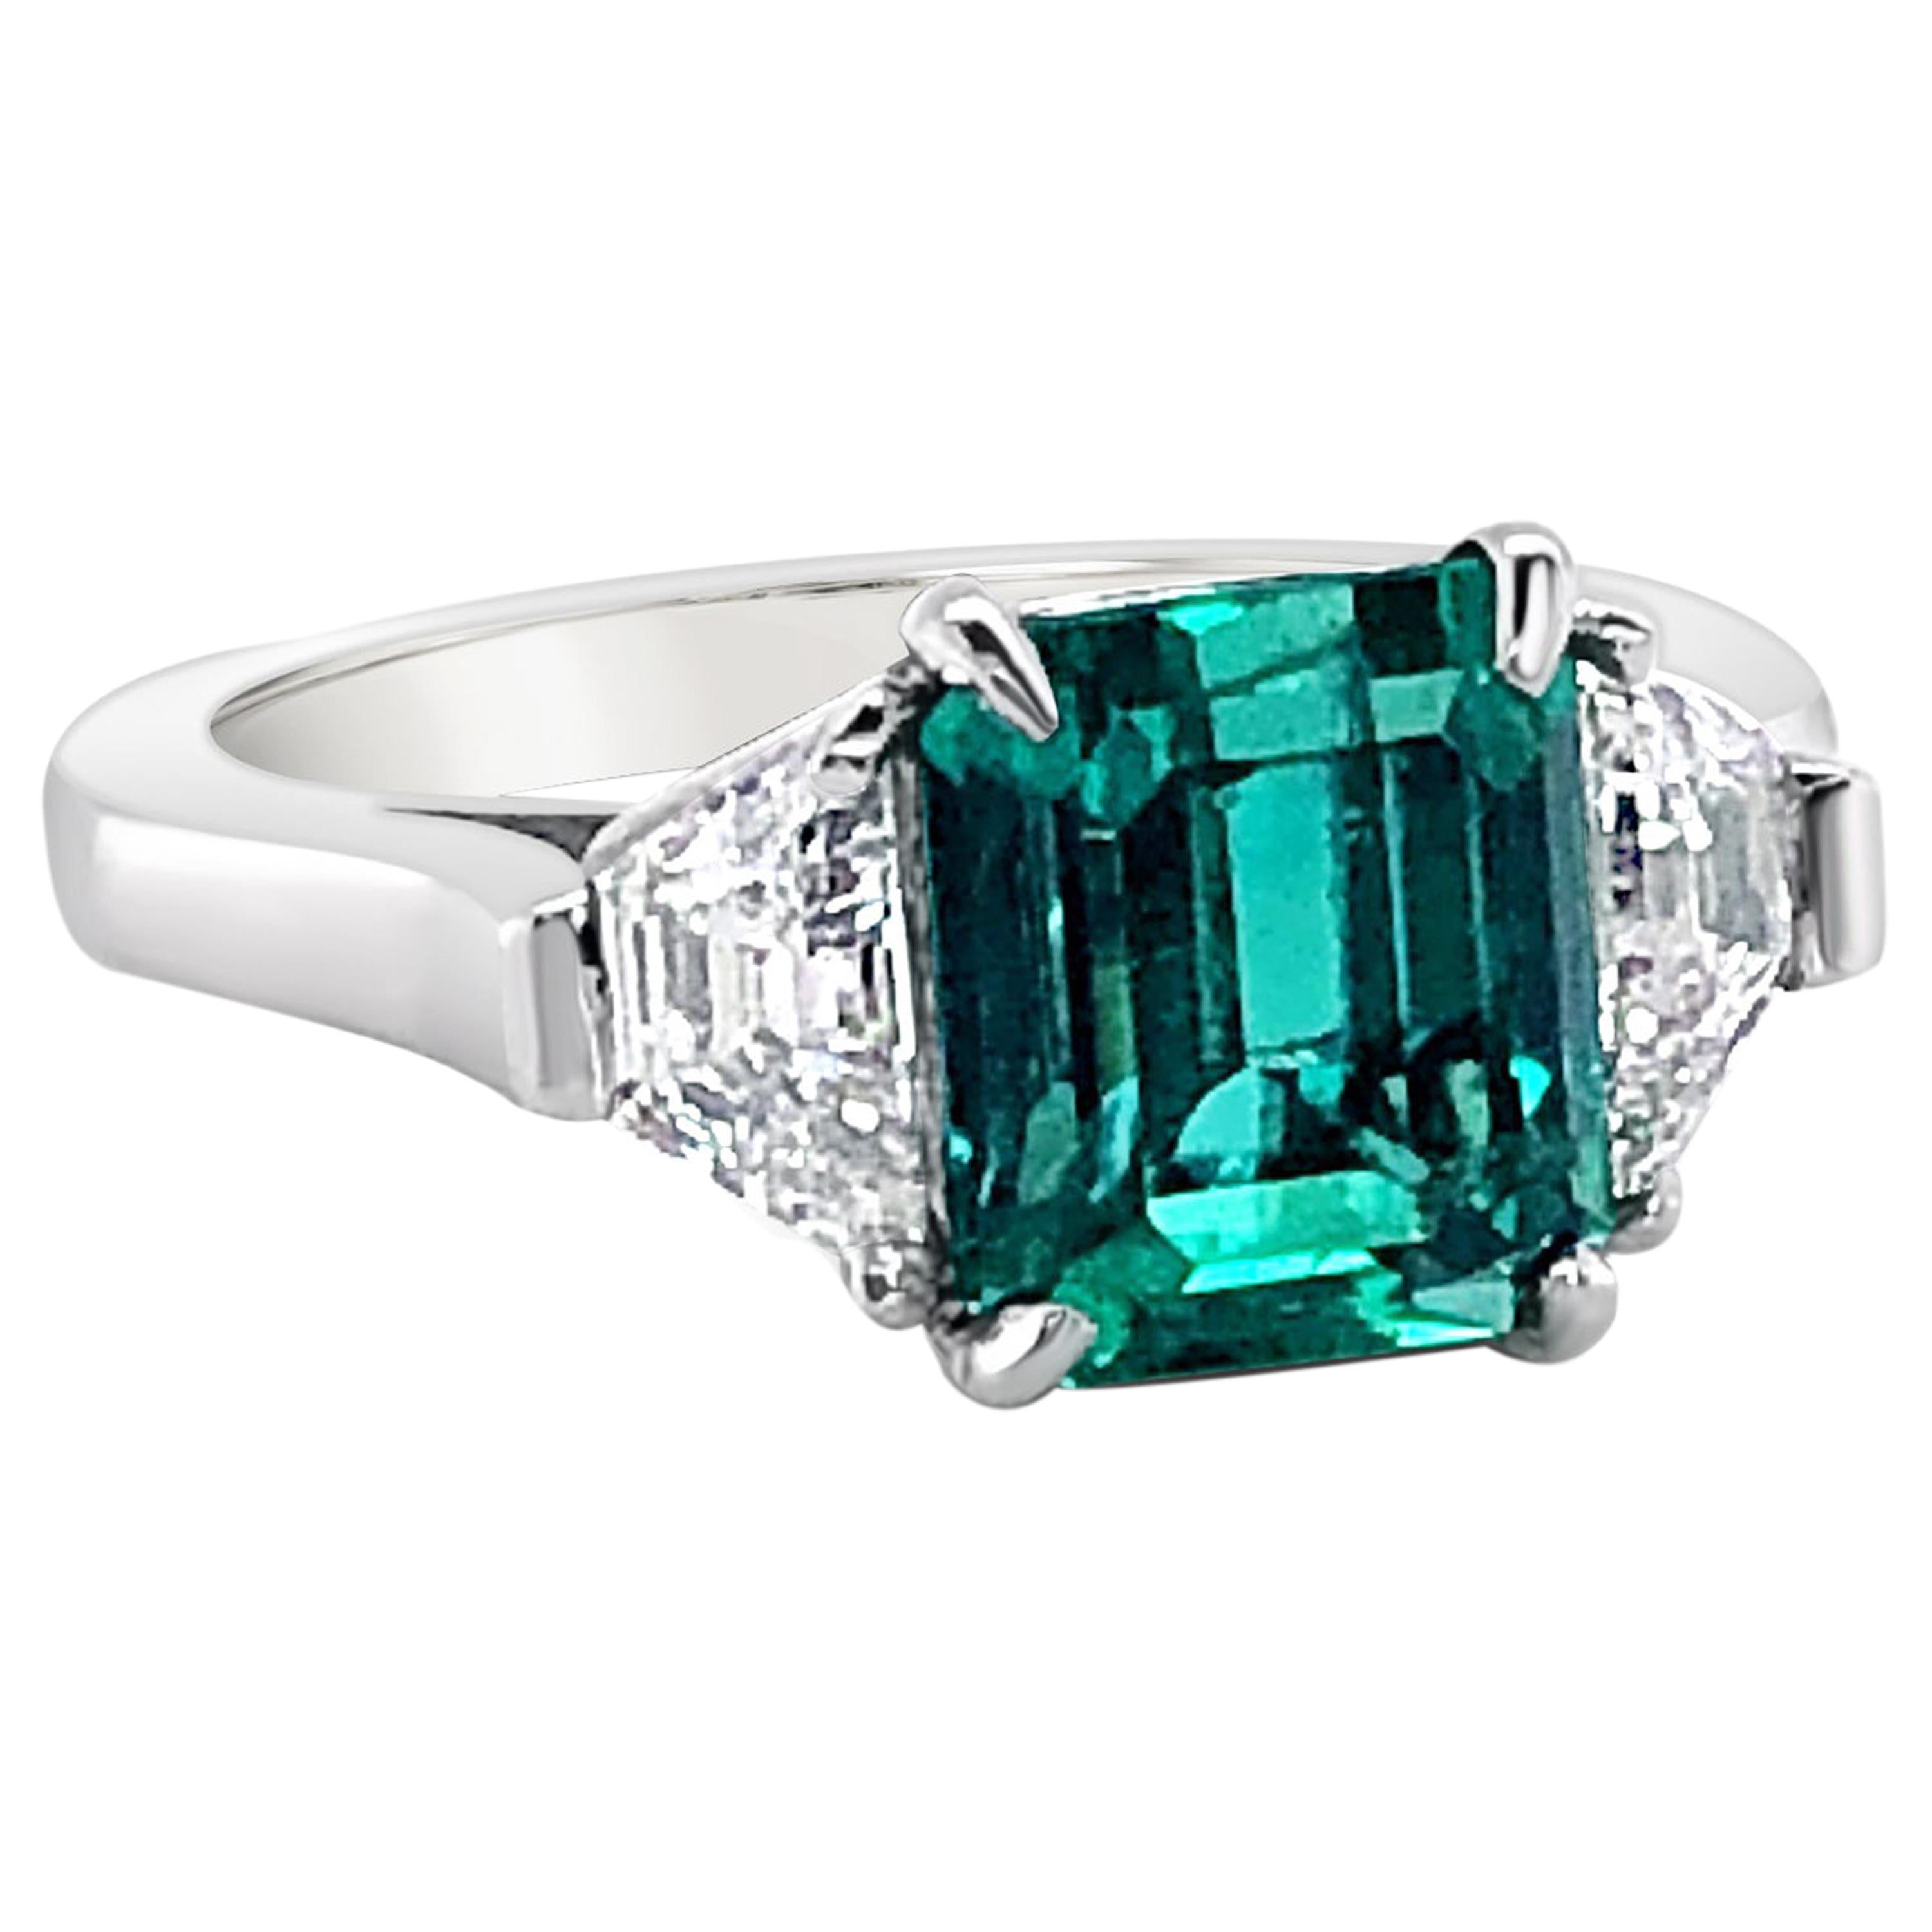 2.72 Carat Emerald and Diamond Ring in Platinum